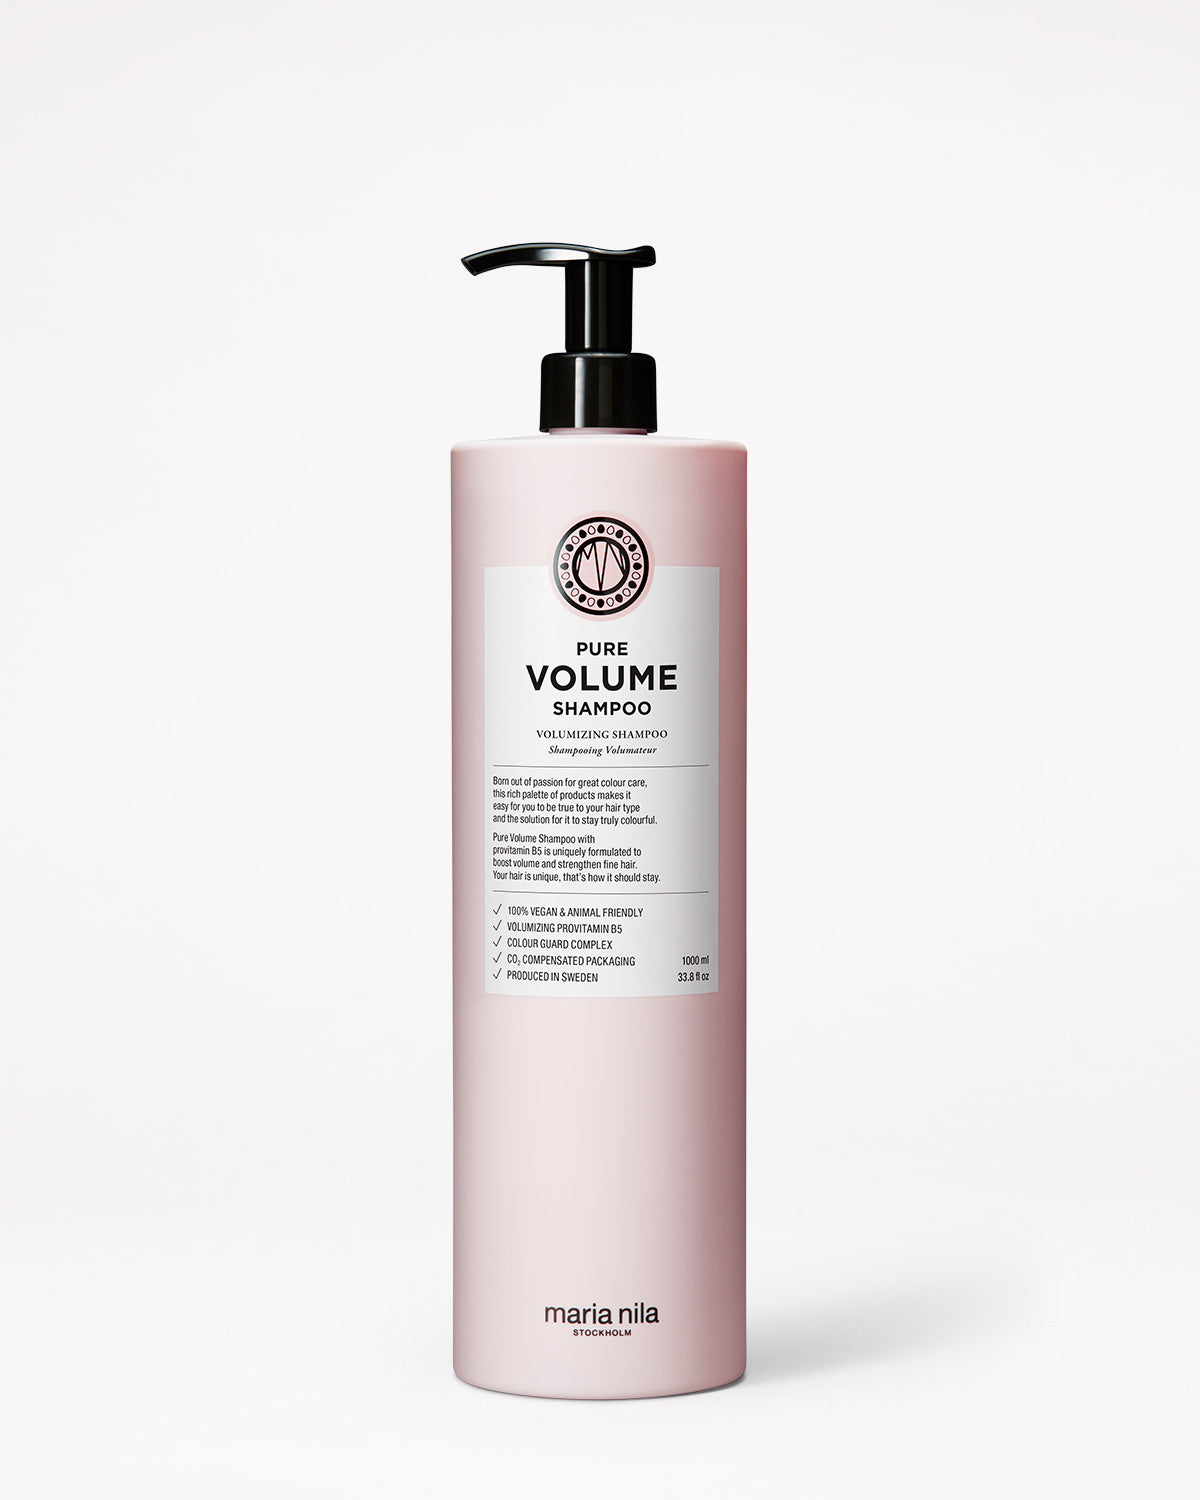 Volumizing shampoo